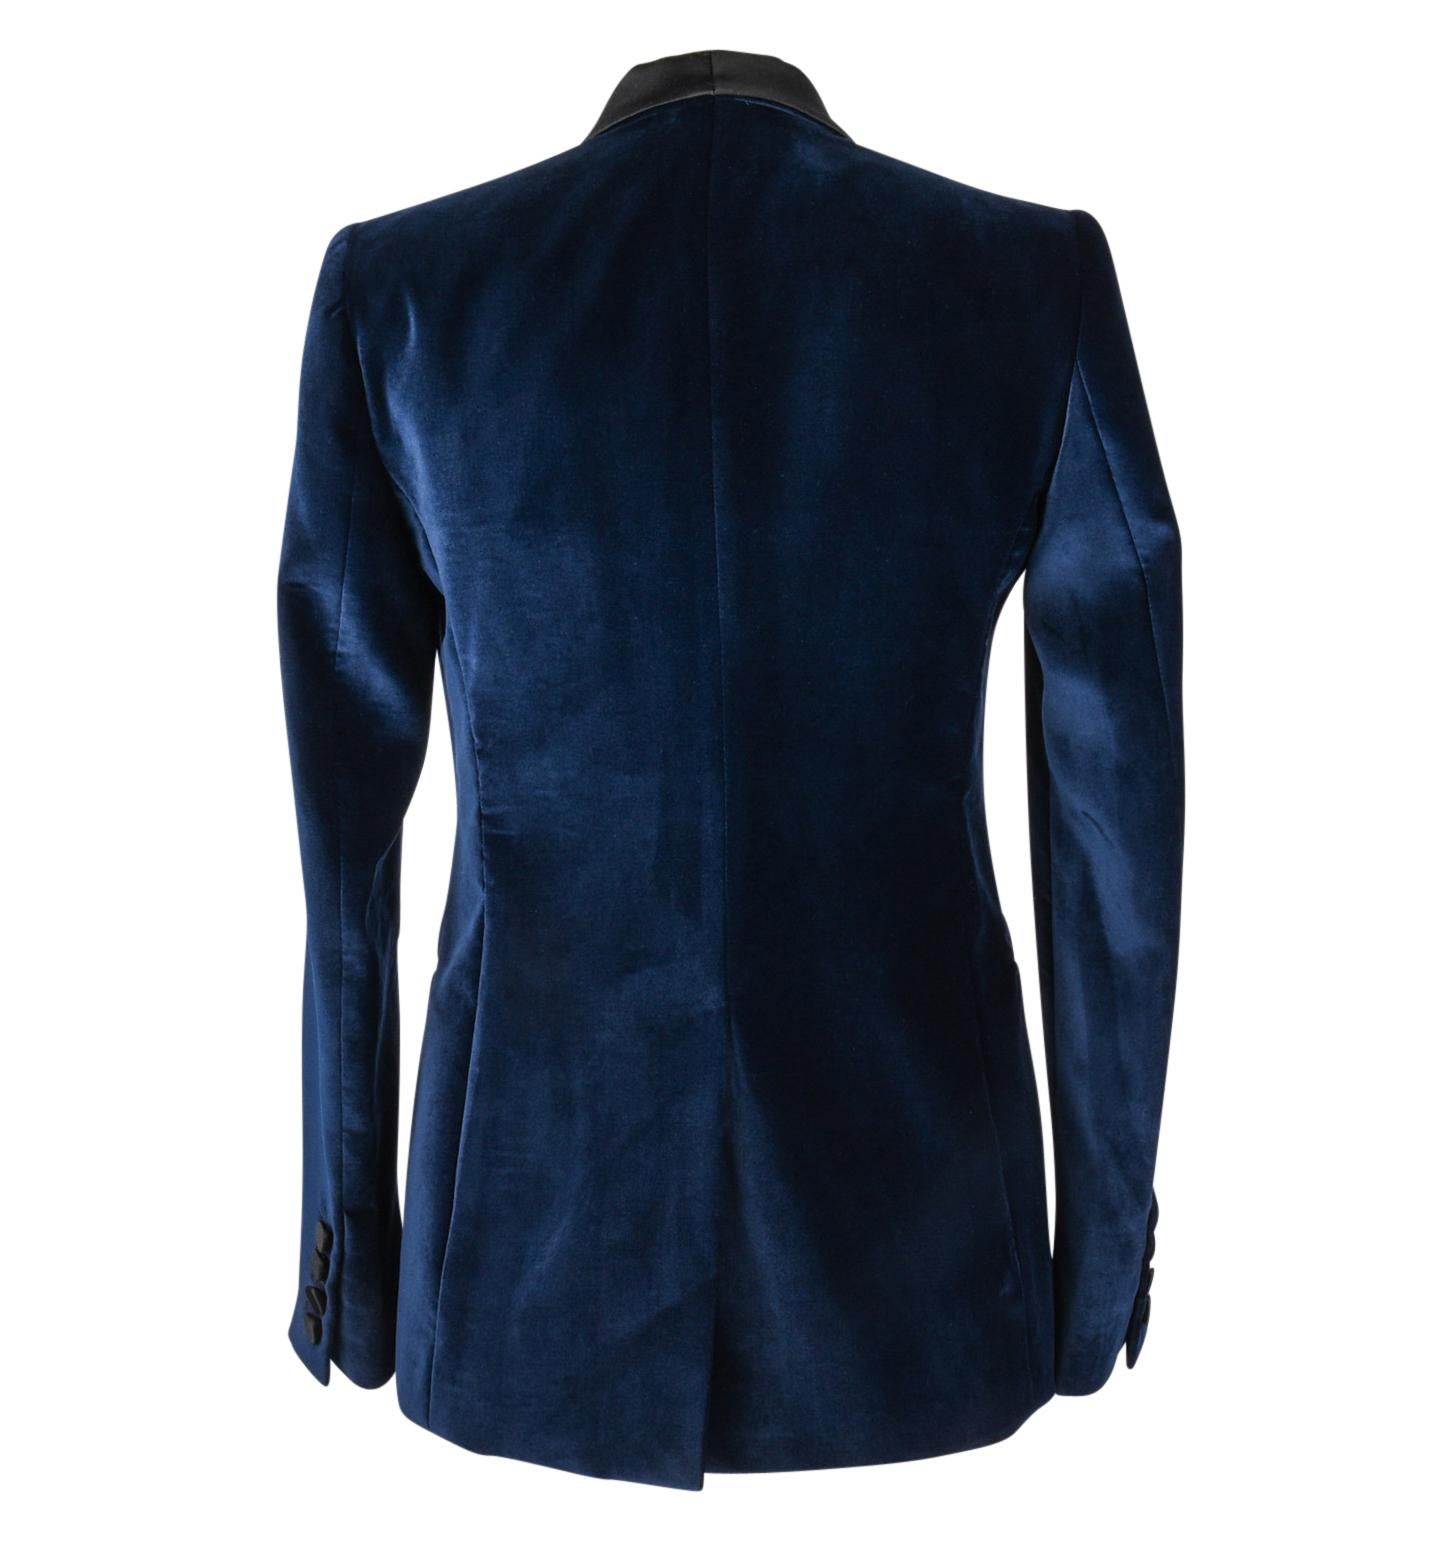 Stella McCartney Jacket Tuxedo Style Navy Velvet Black Trim 38 / 6 2